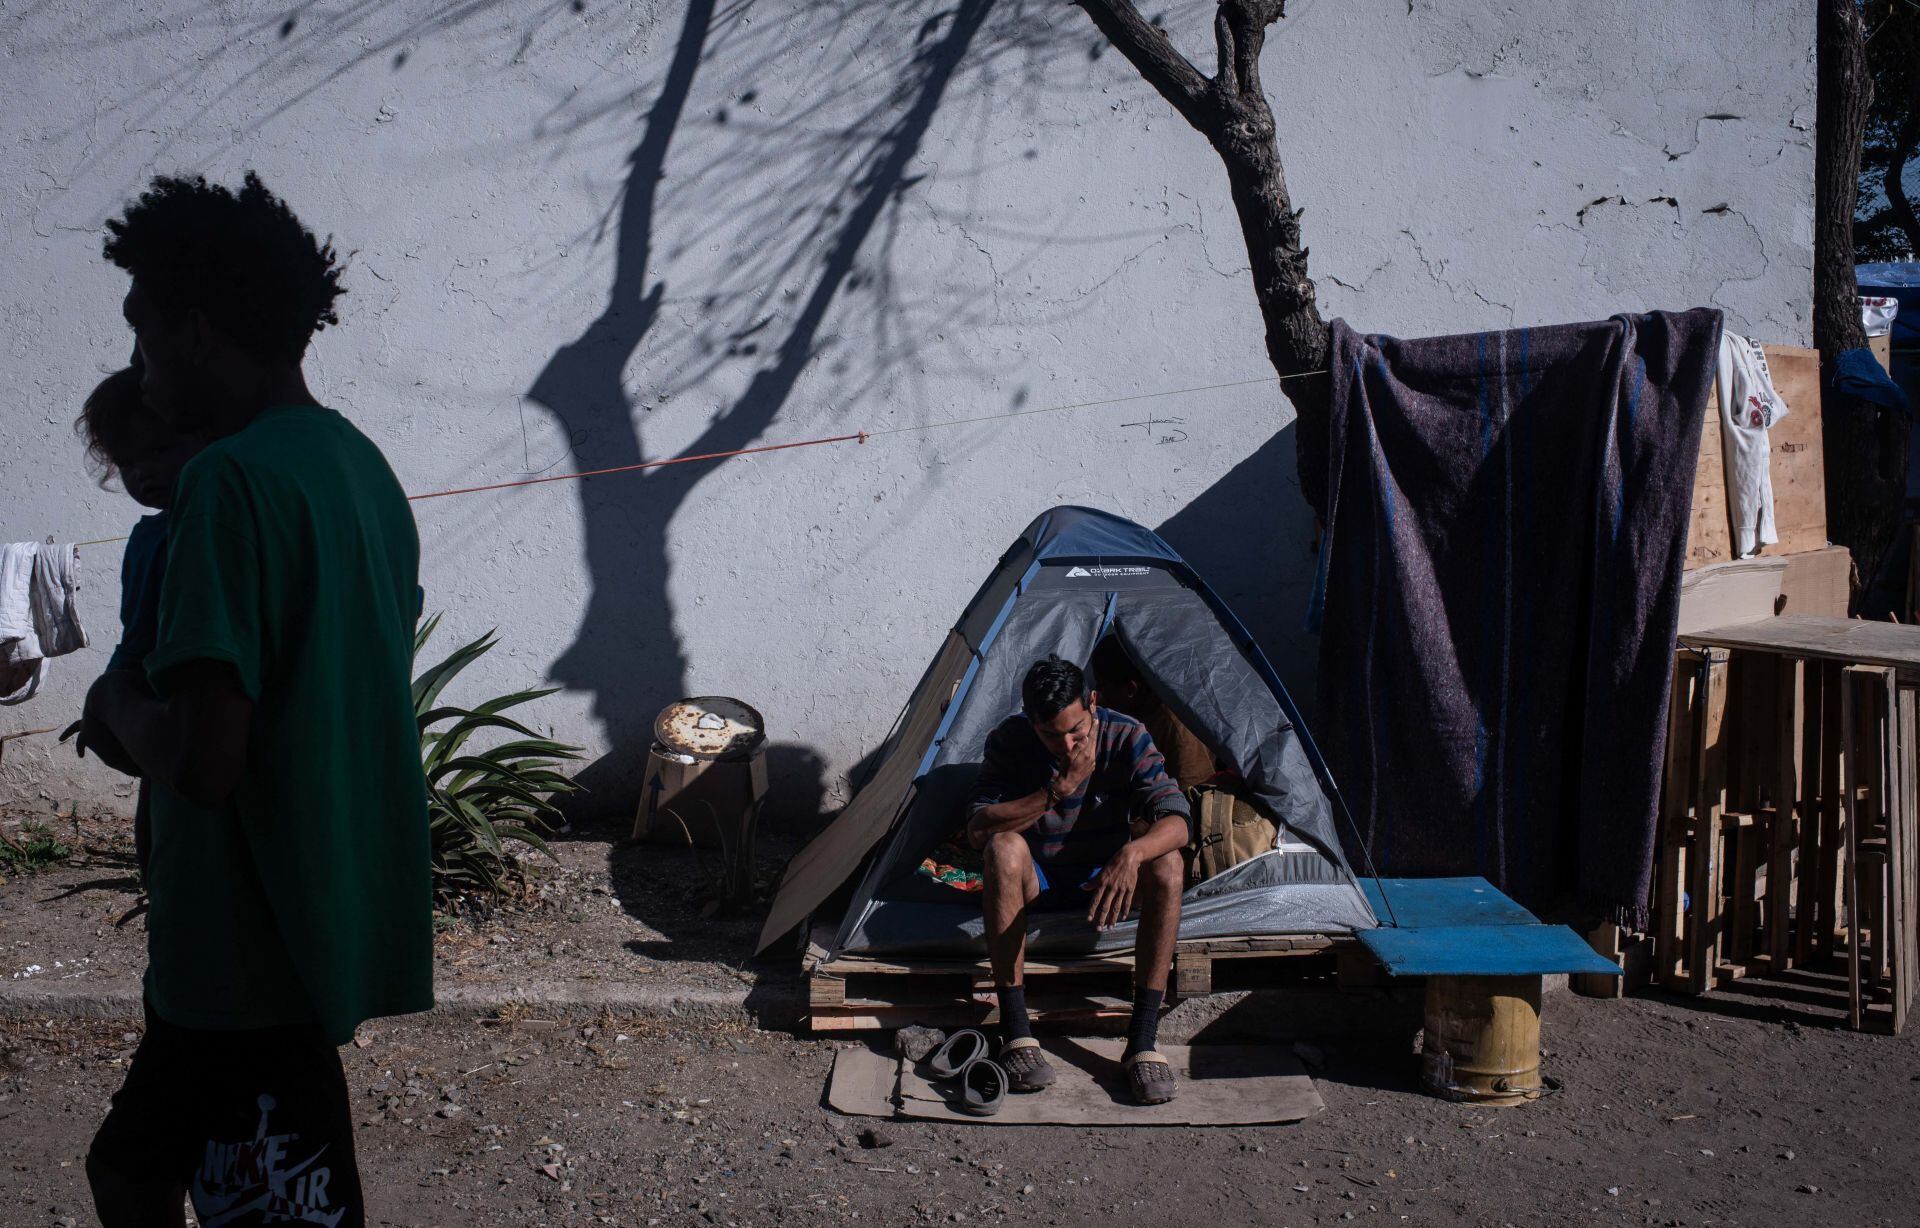 Migrantes, en su mayoría venezolanos, acampan en las inmediaciones de la la vía del tren a unas cuadras del albergue Cafemin, en Vallejo.